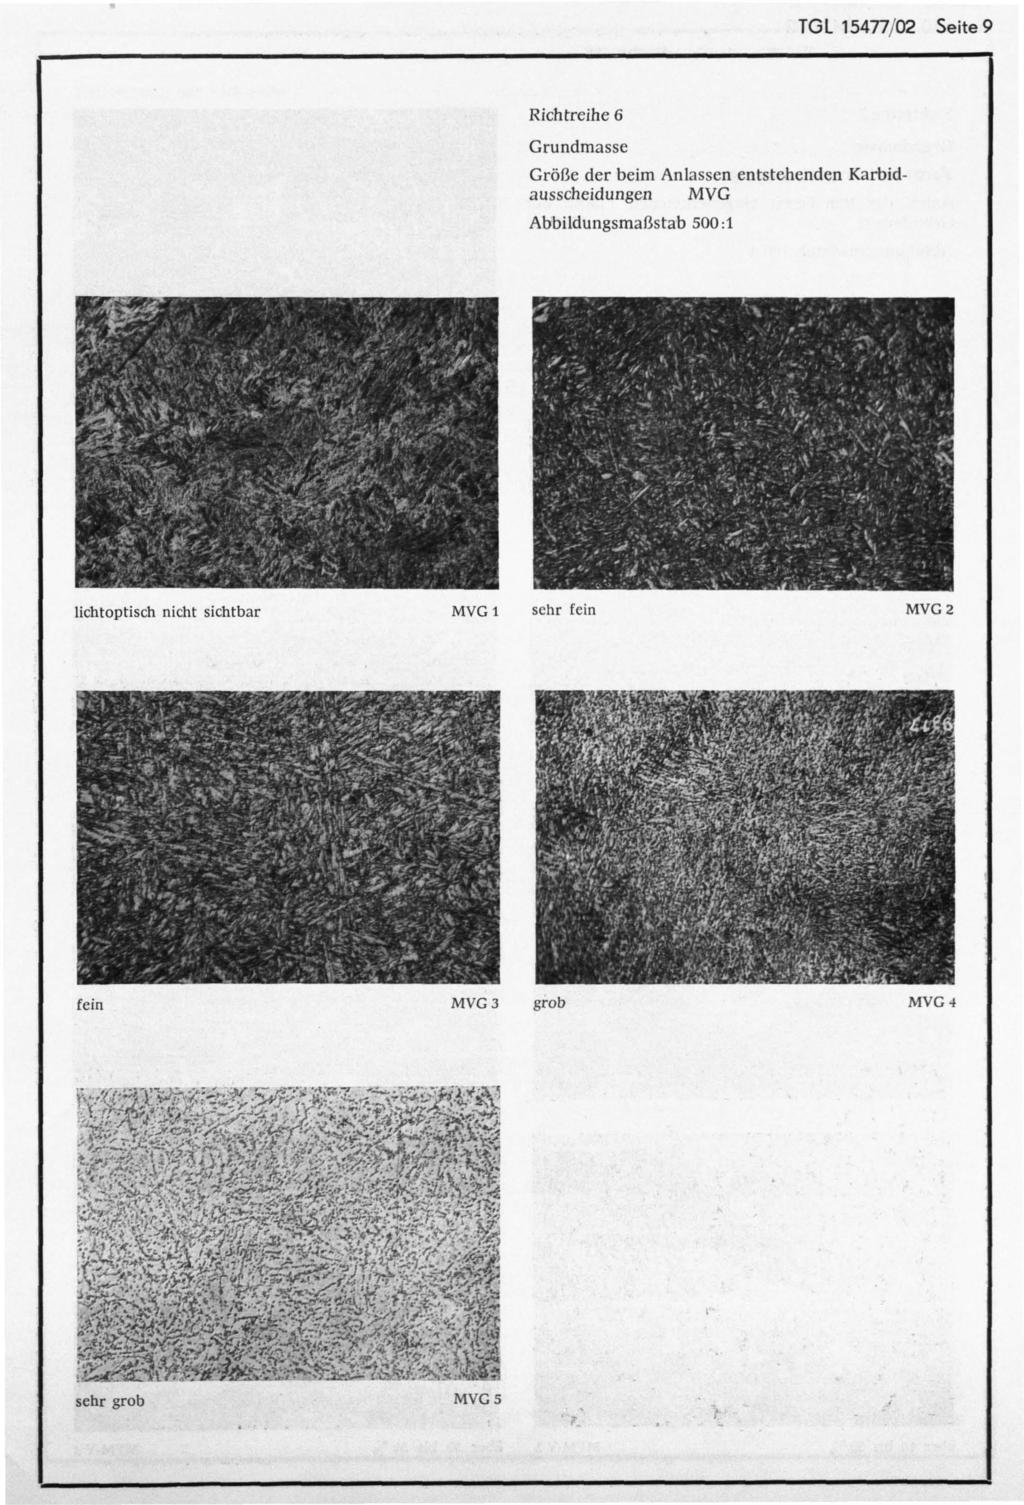 TGL 15477/02 Seite 9 Richtreihe 6 Größe der beim Anlassen entstehenden Karbidausscheidungen MVG